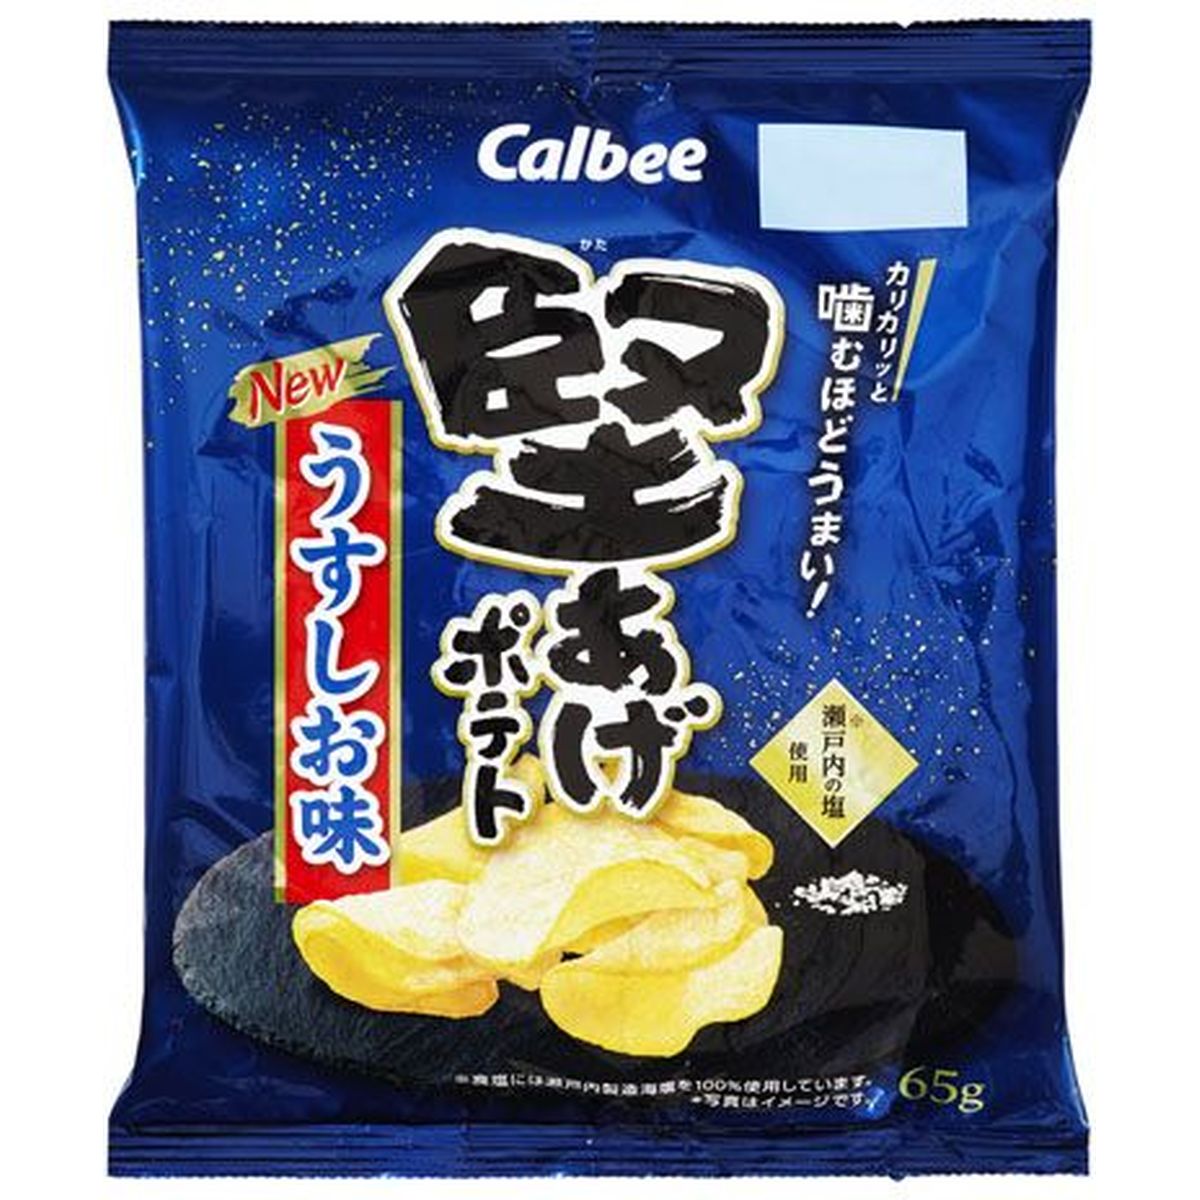 【12個入リ】カルビー 堅アゲポテト ウスシオ味 65g